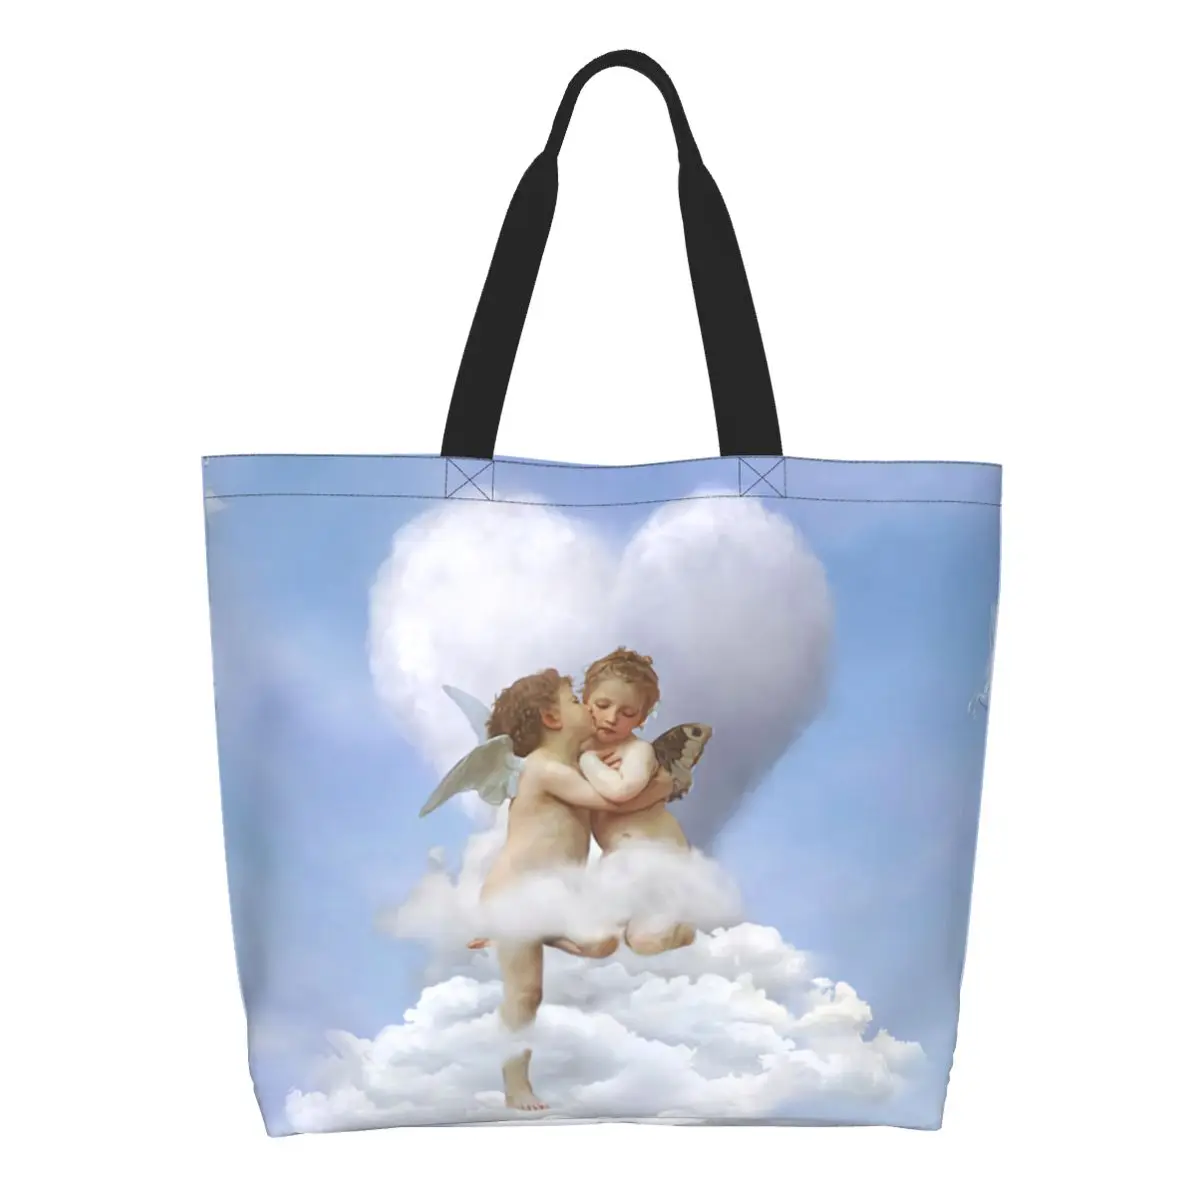 Модная сумка с принтом облаков, поцелуев ангелов, сумка для покупок, Моющаяся холщовая сумка для покупок, сумка в стиле Ренессанс с Херувимом . ' - ' . 0